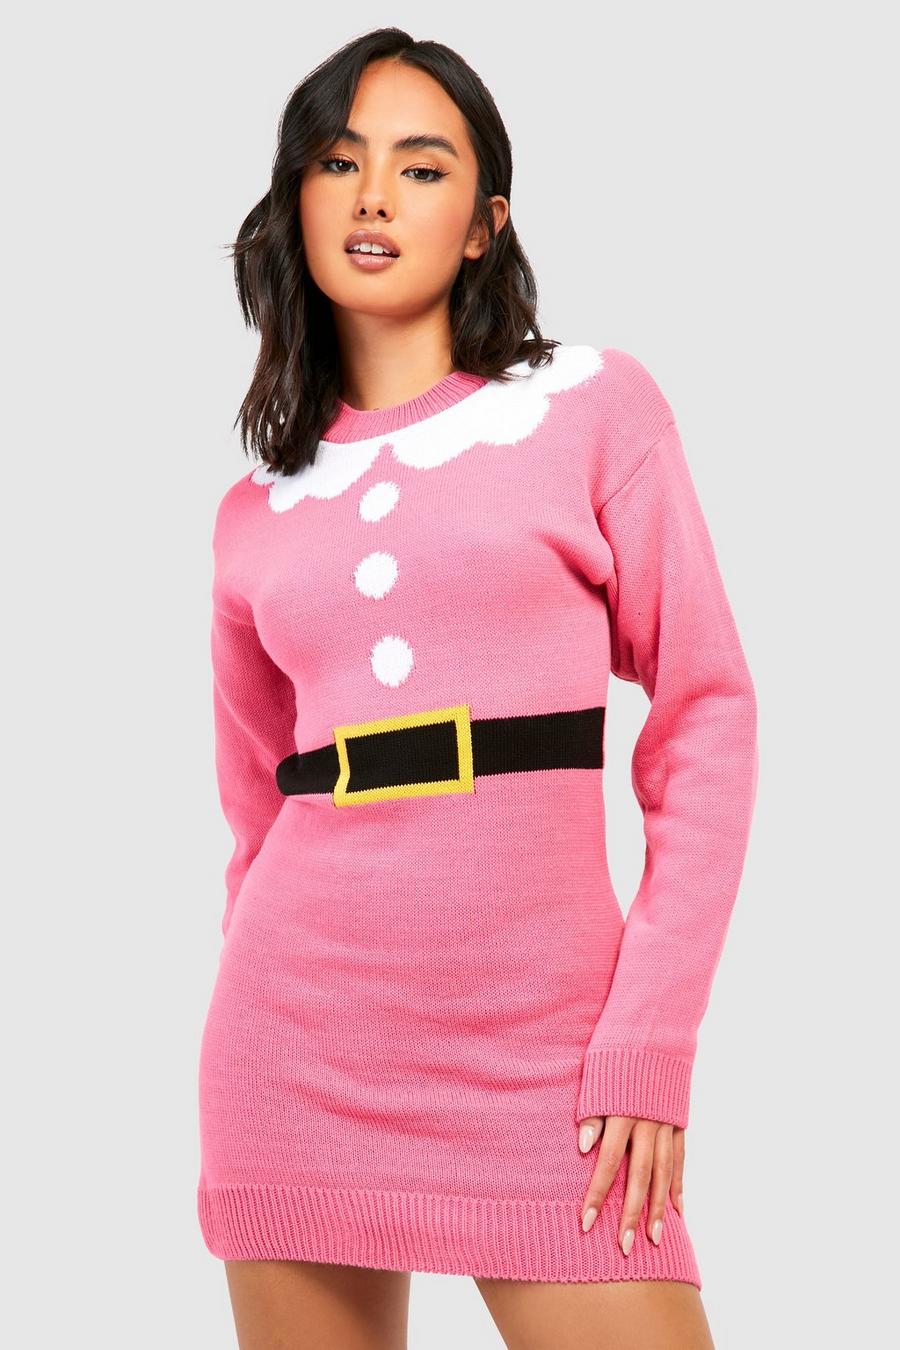 Hot pink Mrs Claus Christmas Jumper Dress